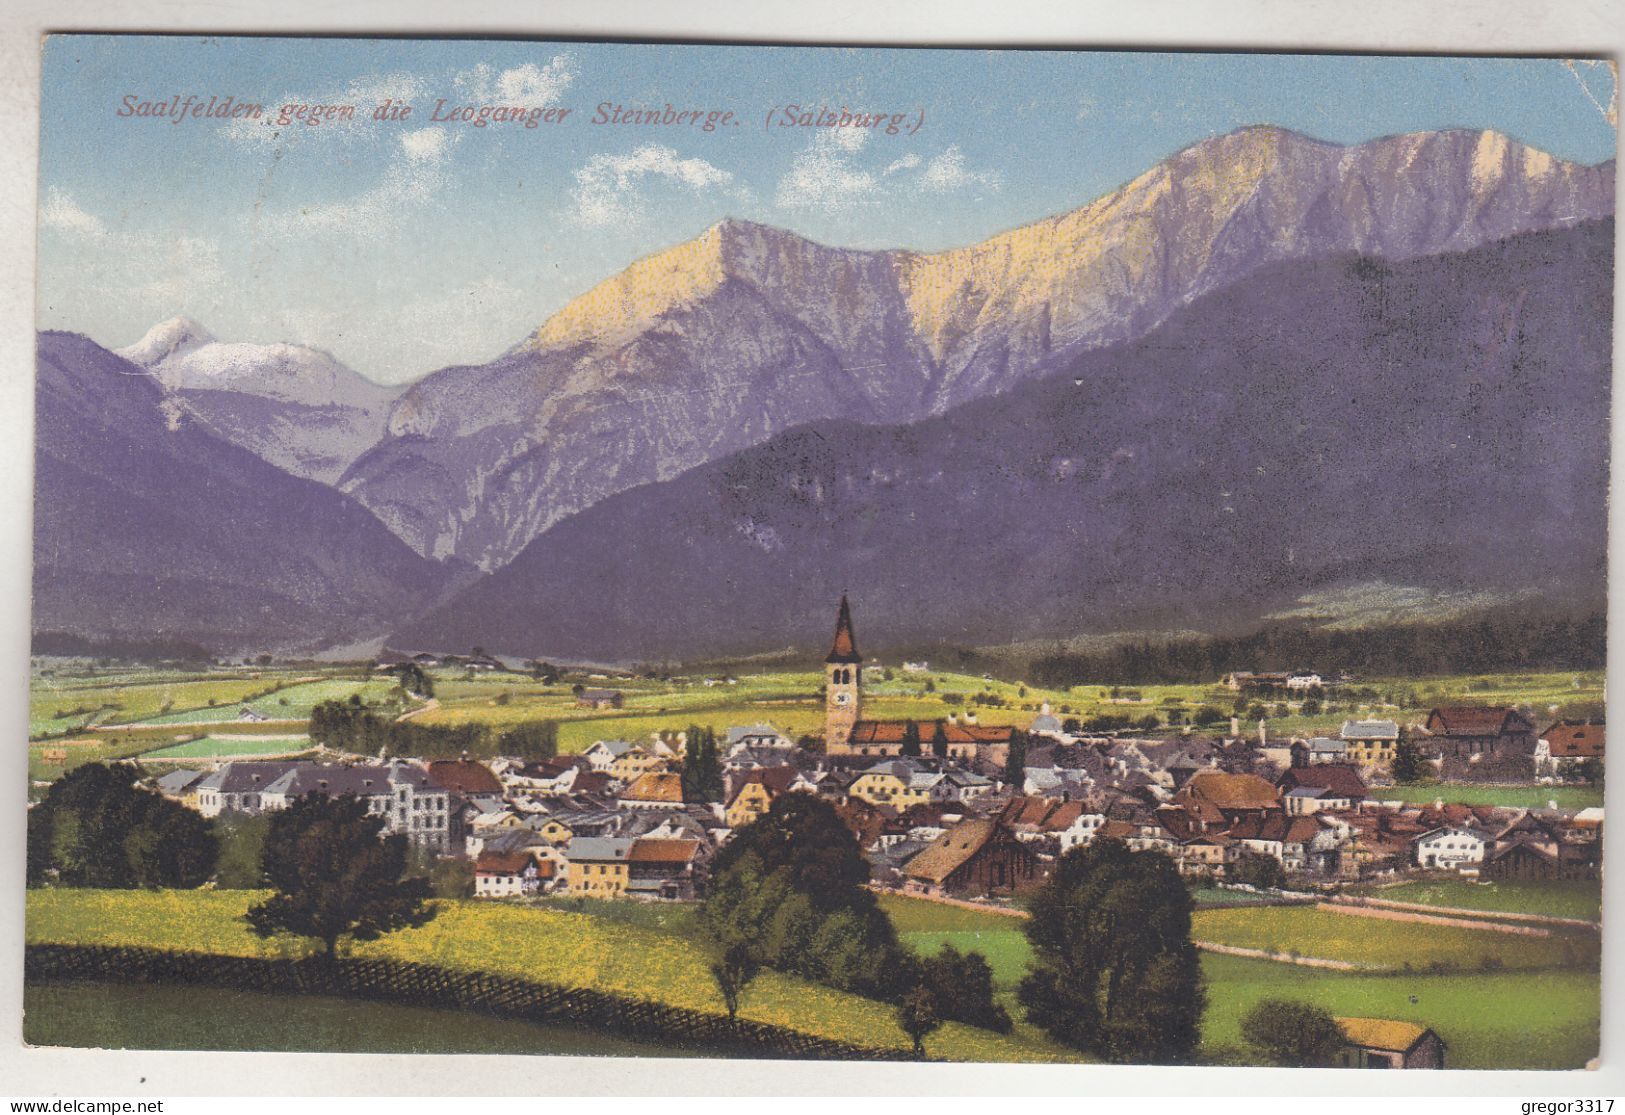 C7405) SAALFELDEN Gegen Die Leoganger Steinberge - Salzburg - Bäume Kirche Häser Berge ALT 1917  - - Saalfelden